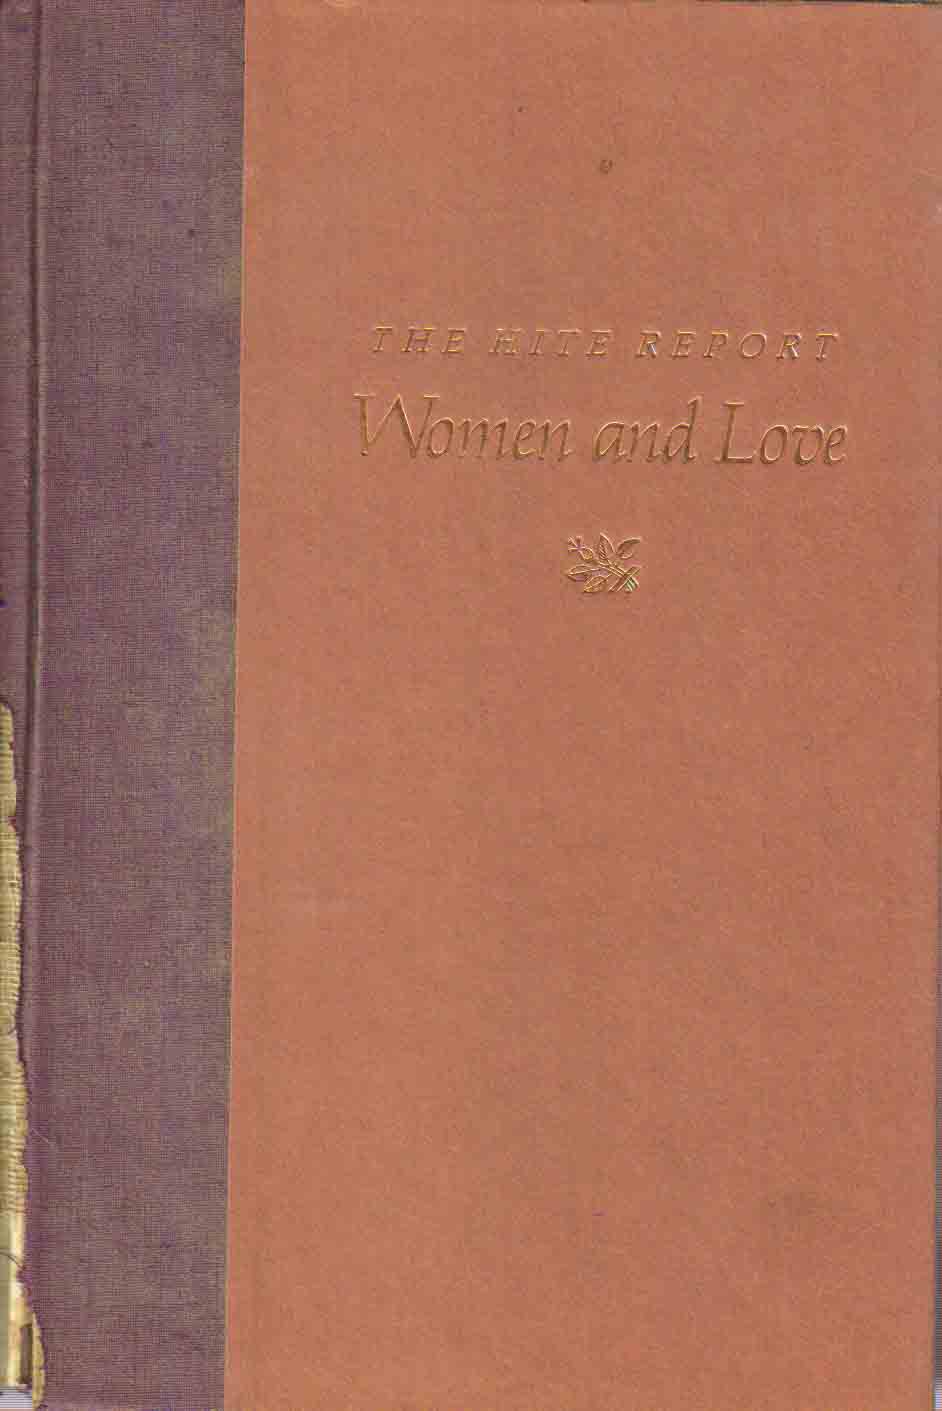 The Hite Report Women & Love